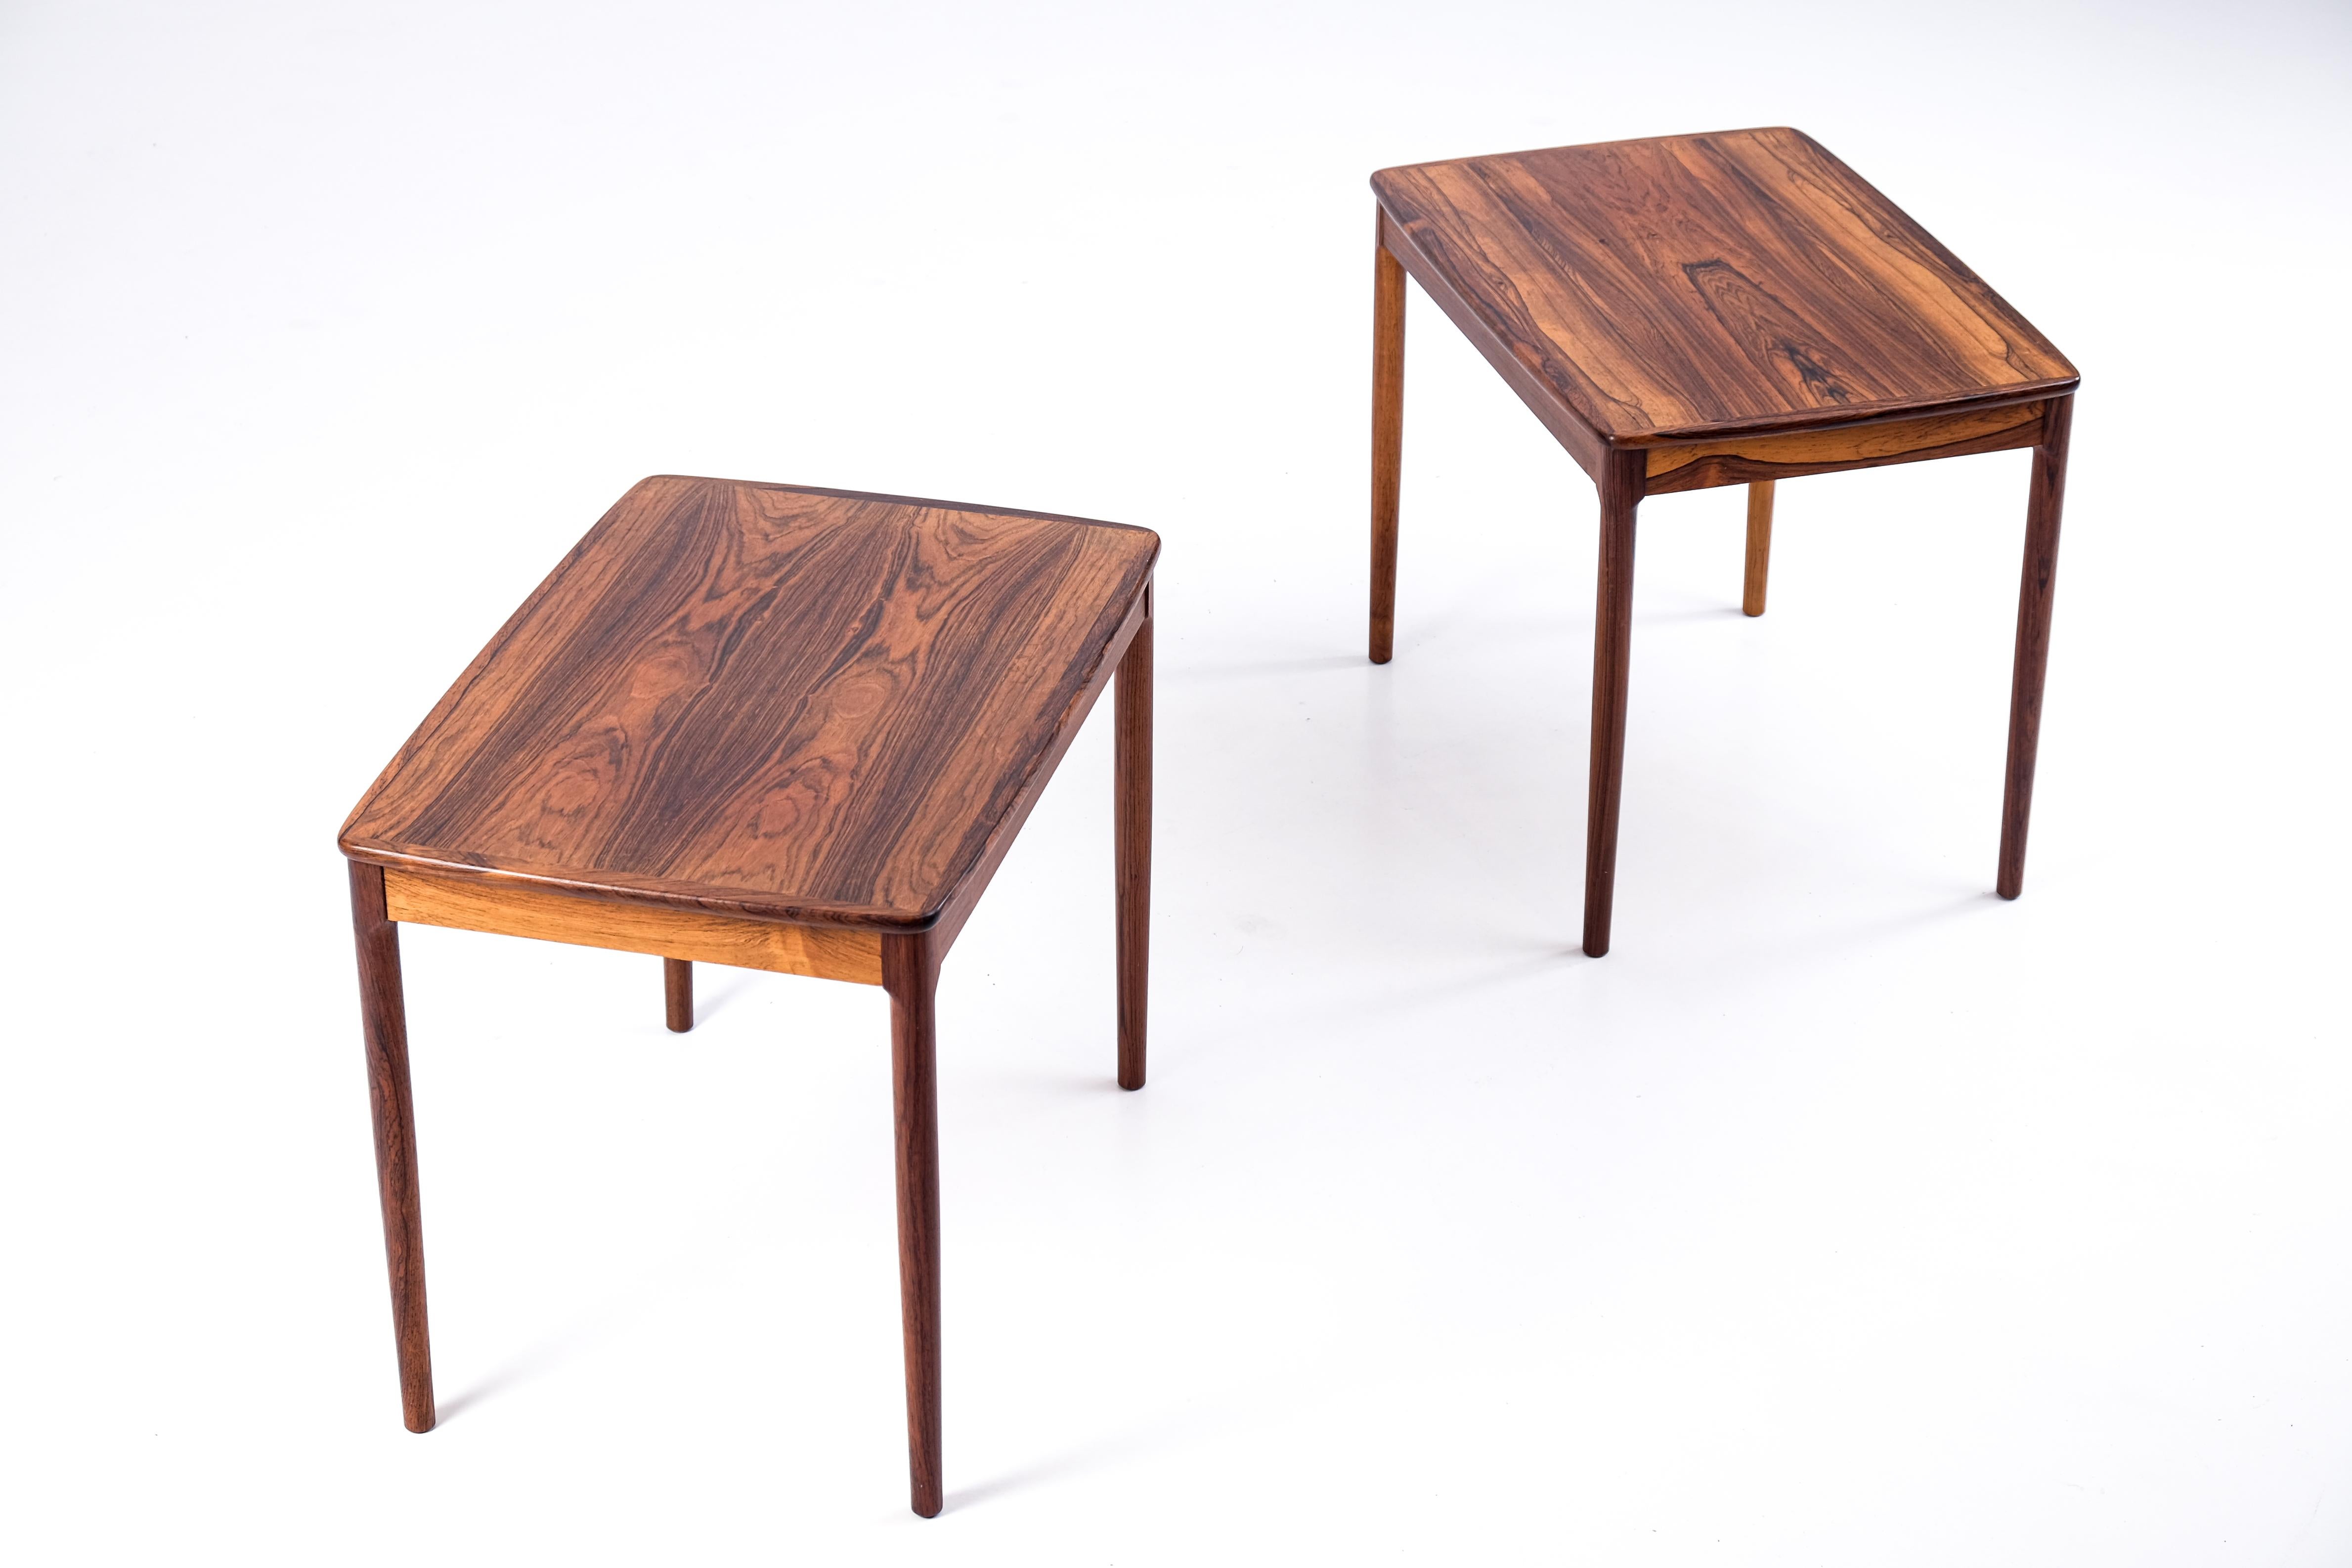 Superbe paire de tables d'appoint / tables de chevet produite en Suède par Säffle Möbelfabrik, conçue par Yngvar Sandström, années 1960.

 